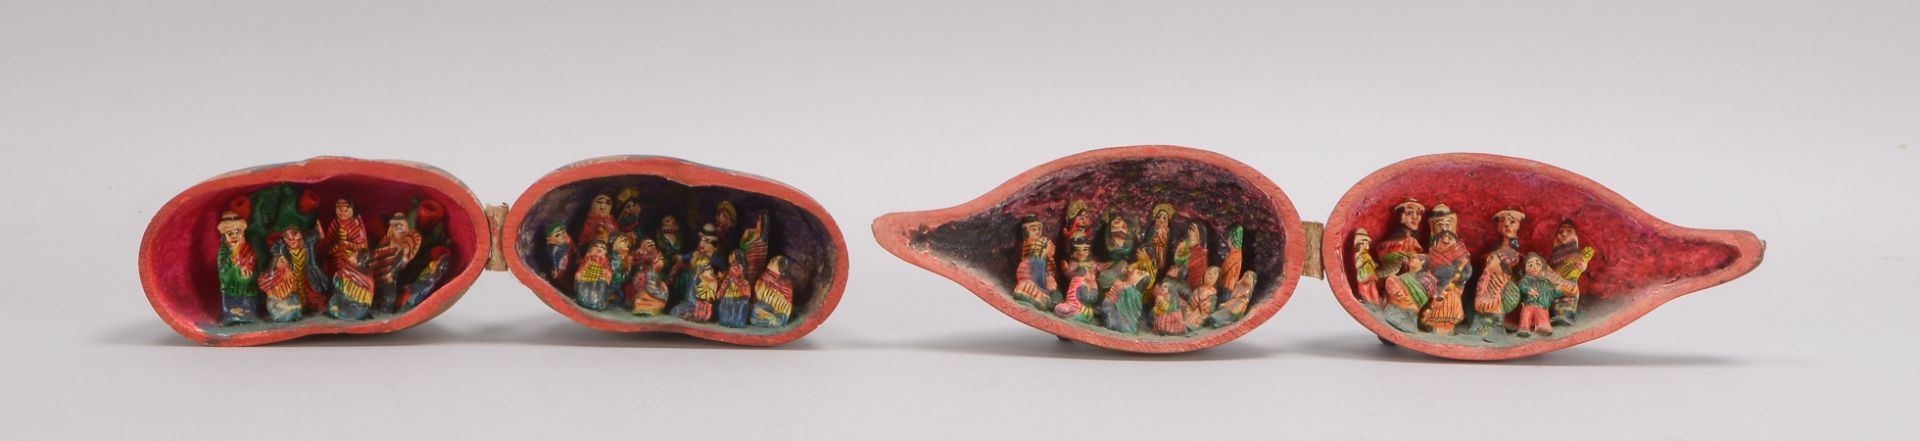 2 Kalebassen-Kürbisse (wohl südamerikanische Volkskunst), innen mit plastischem Figurenbesatz